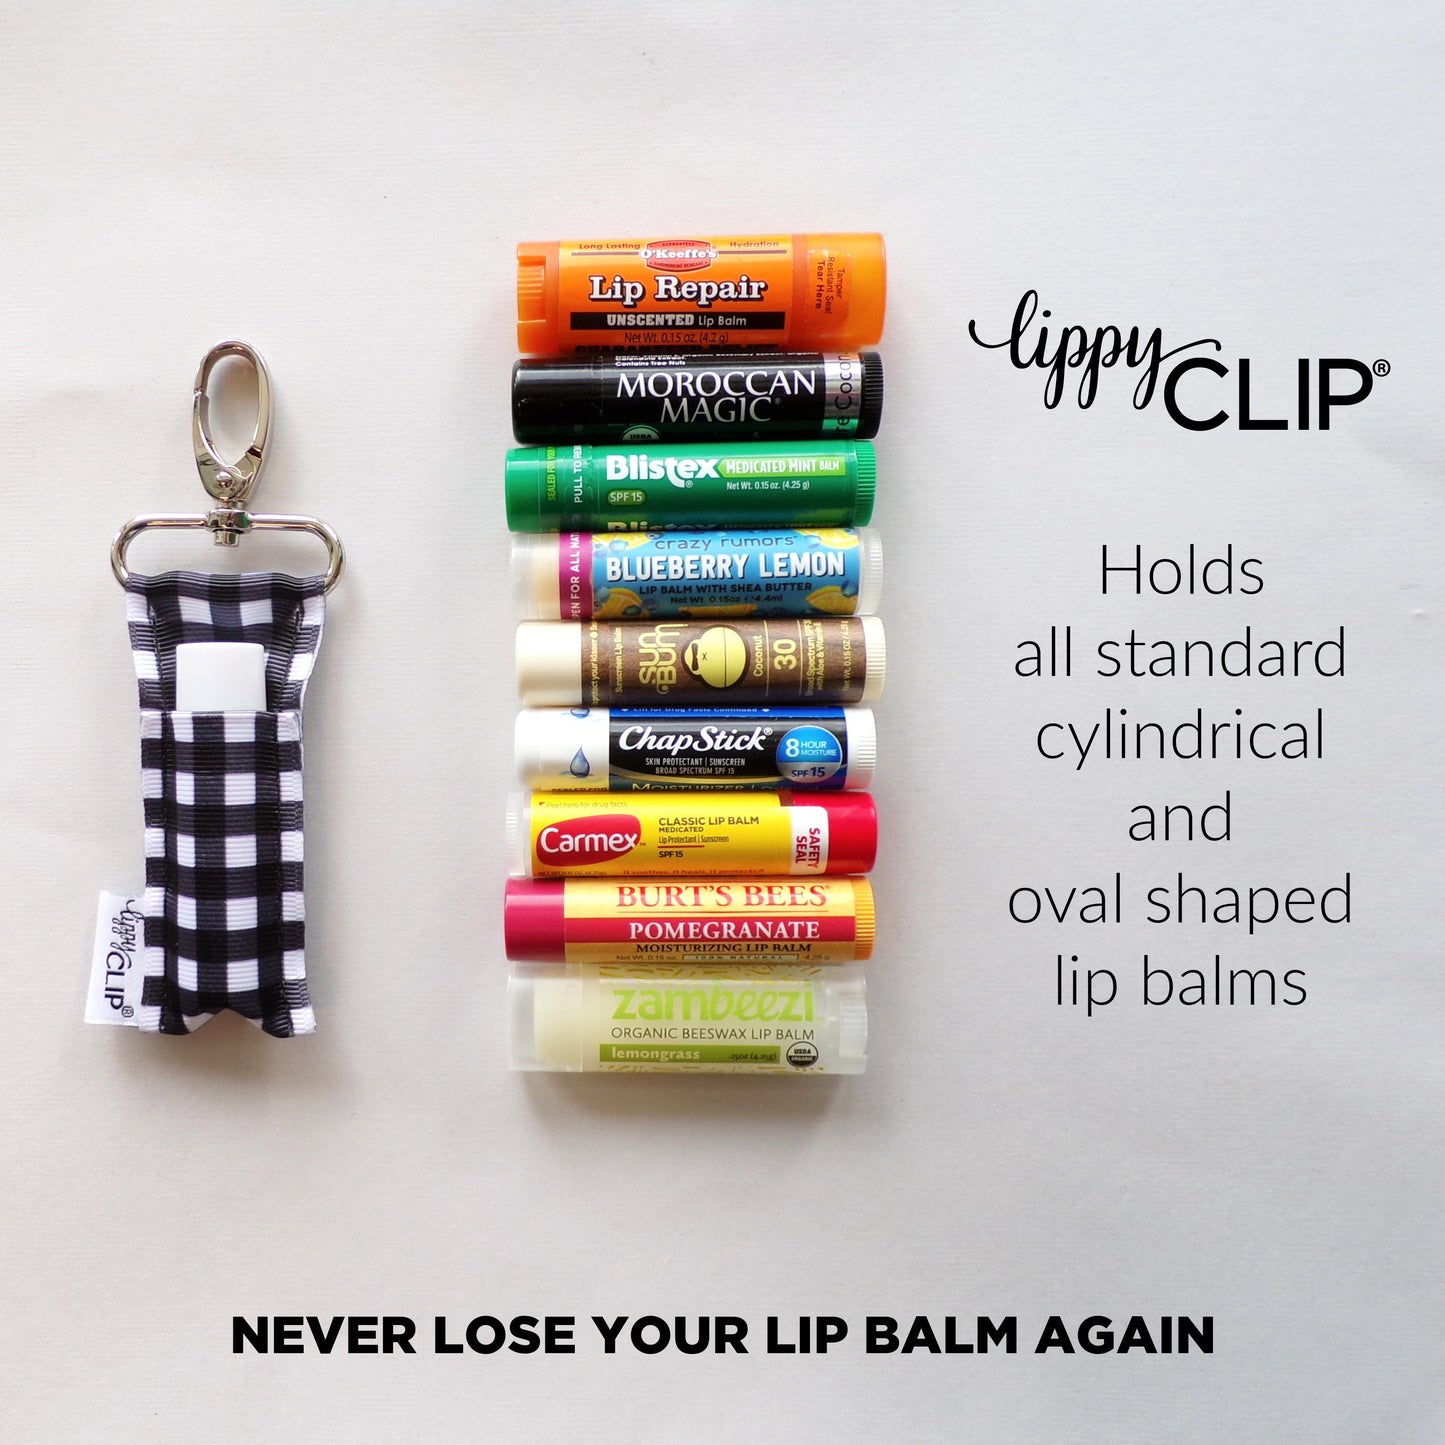 Crisp Air Serenade LippyClip® Lip Balm Holder